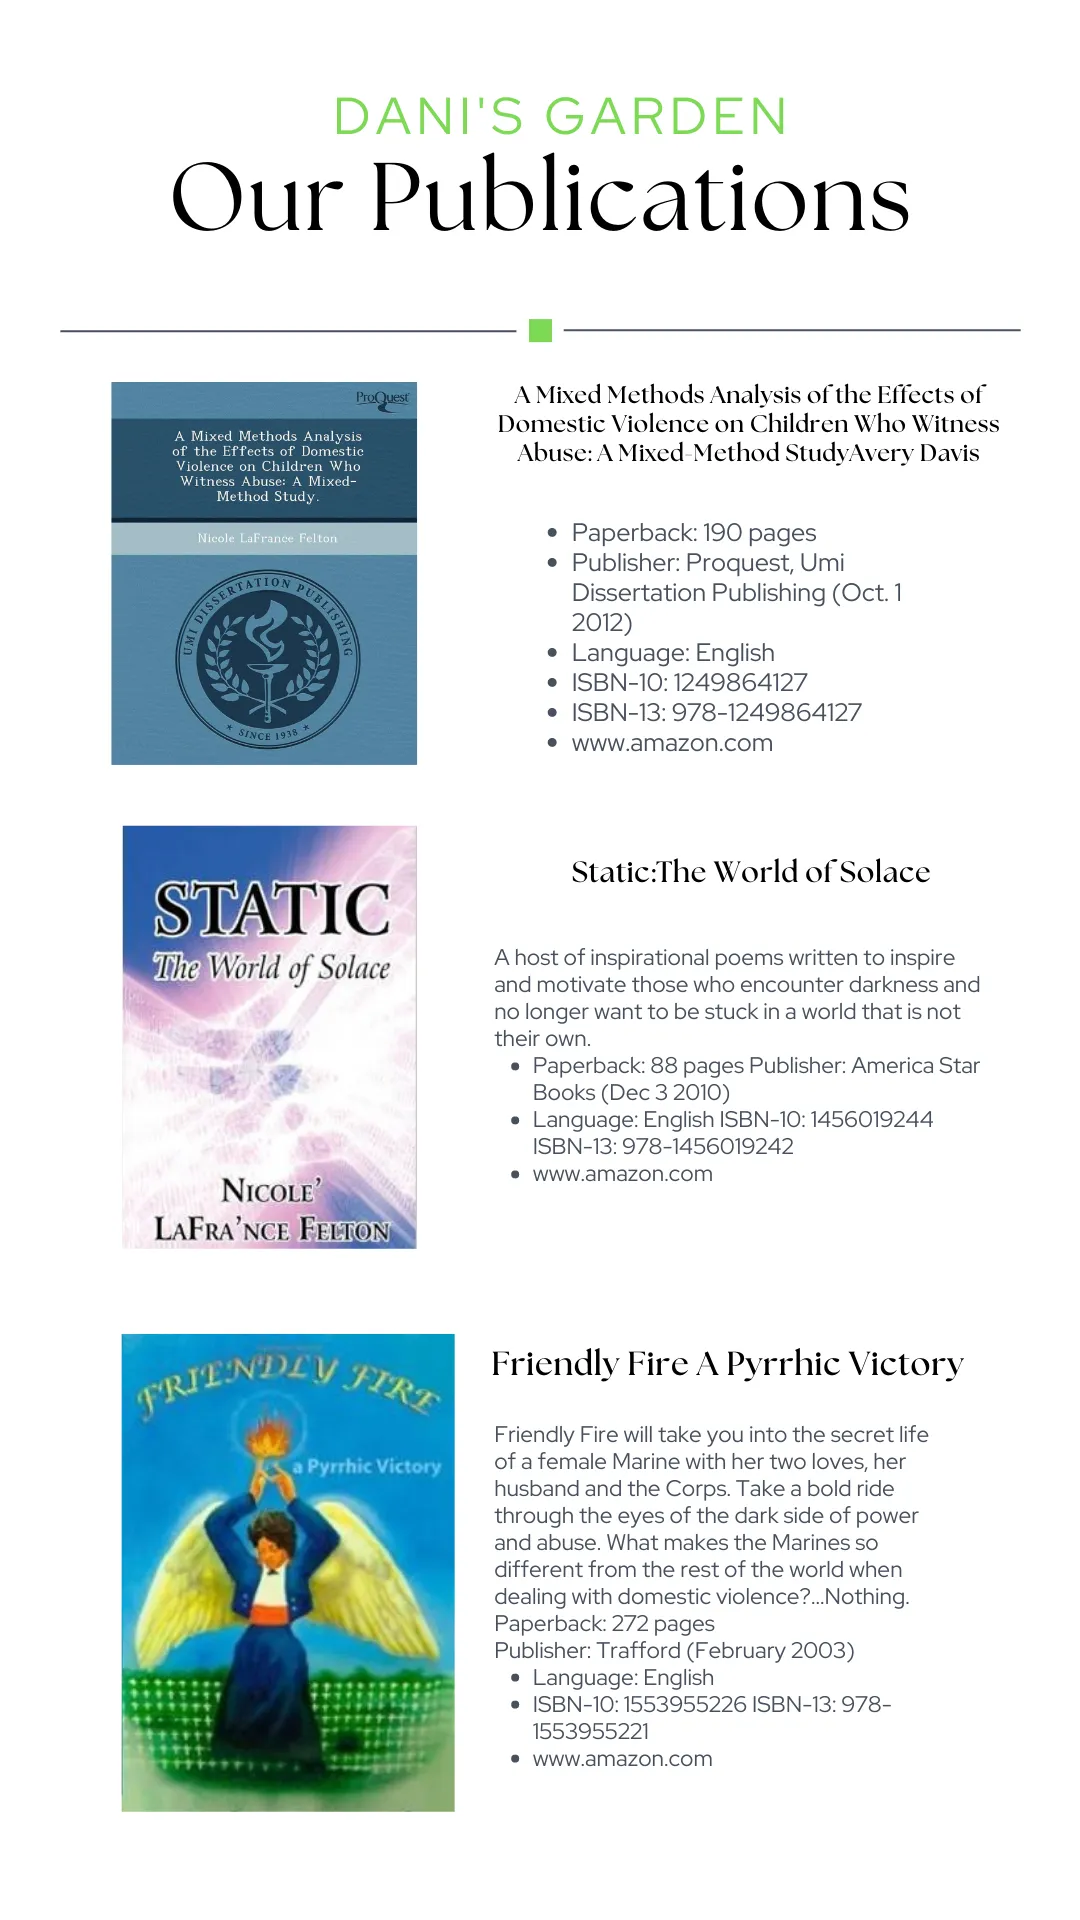 Our publications 2